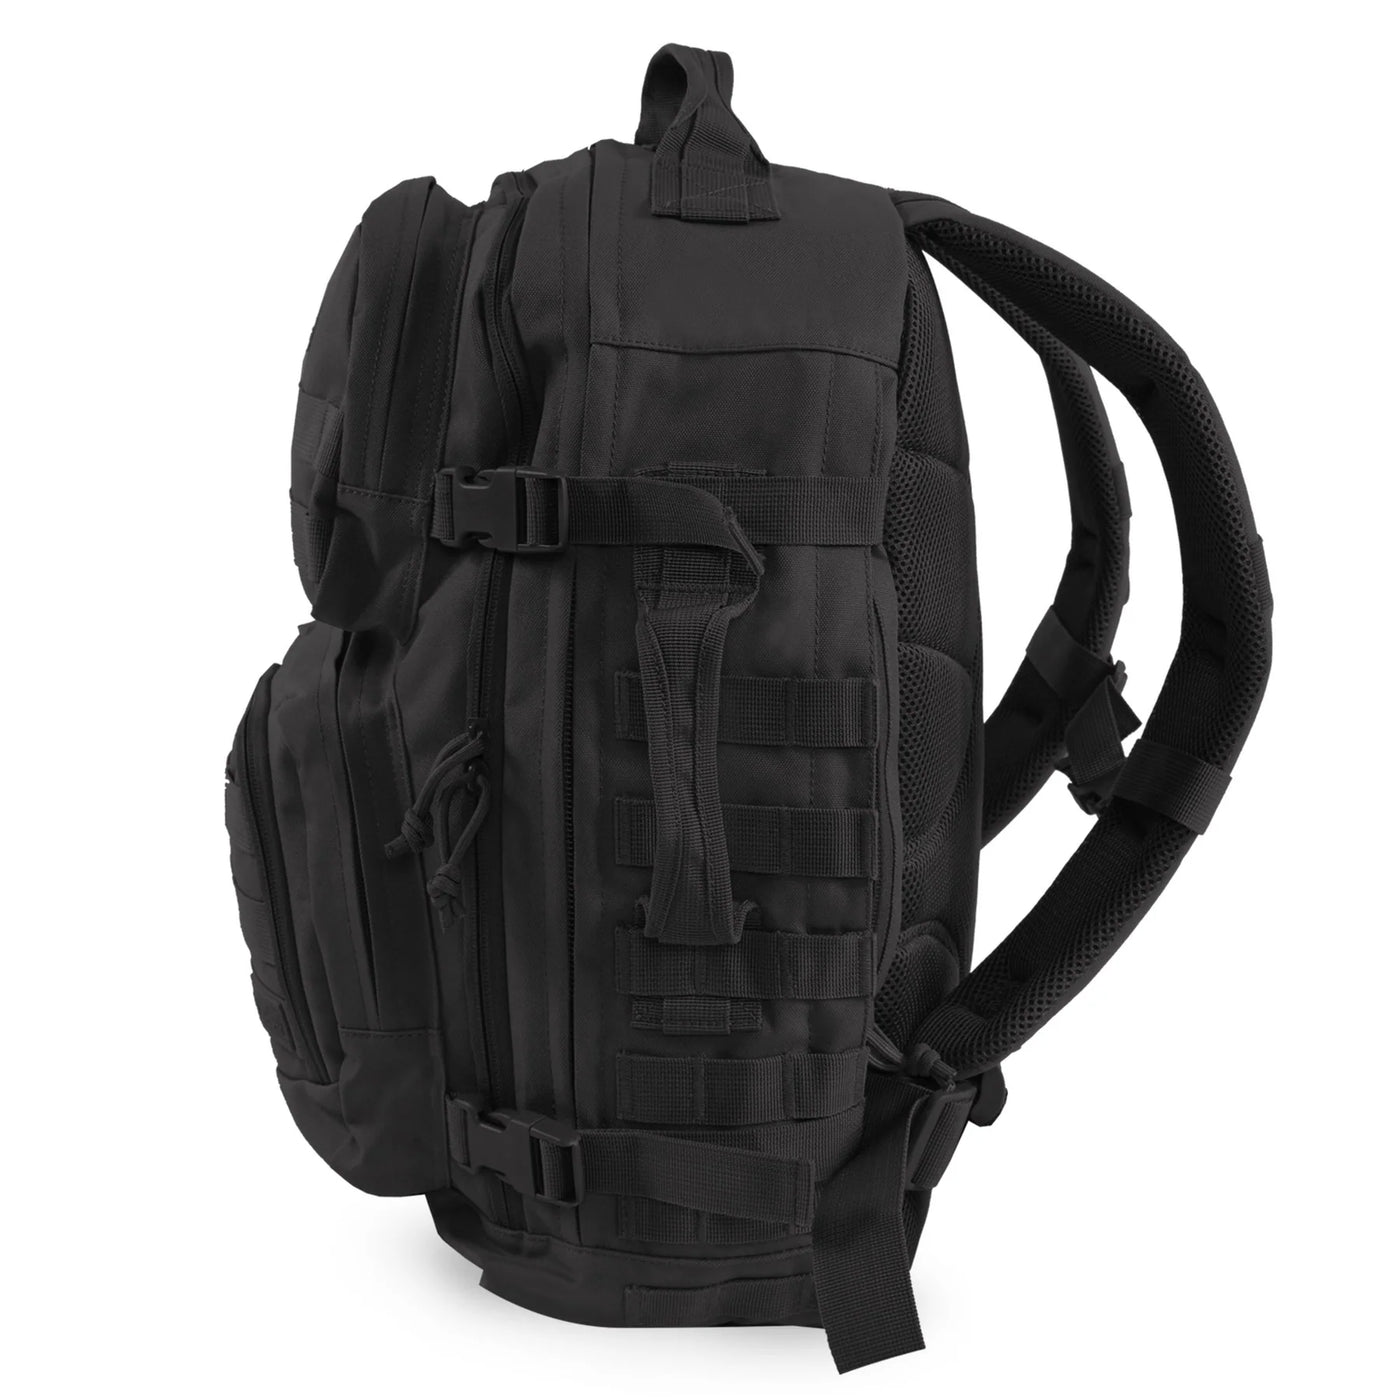 major backpack black